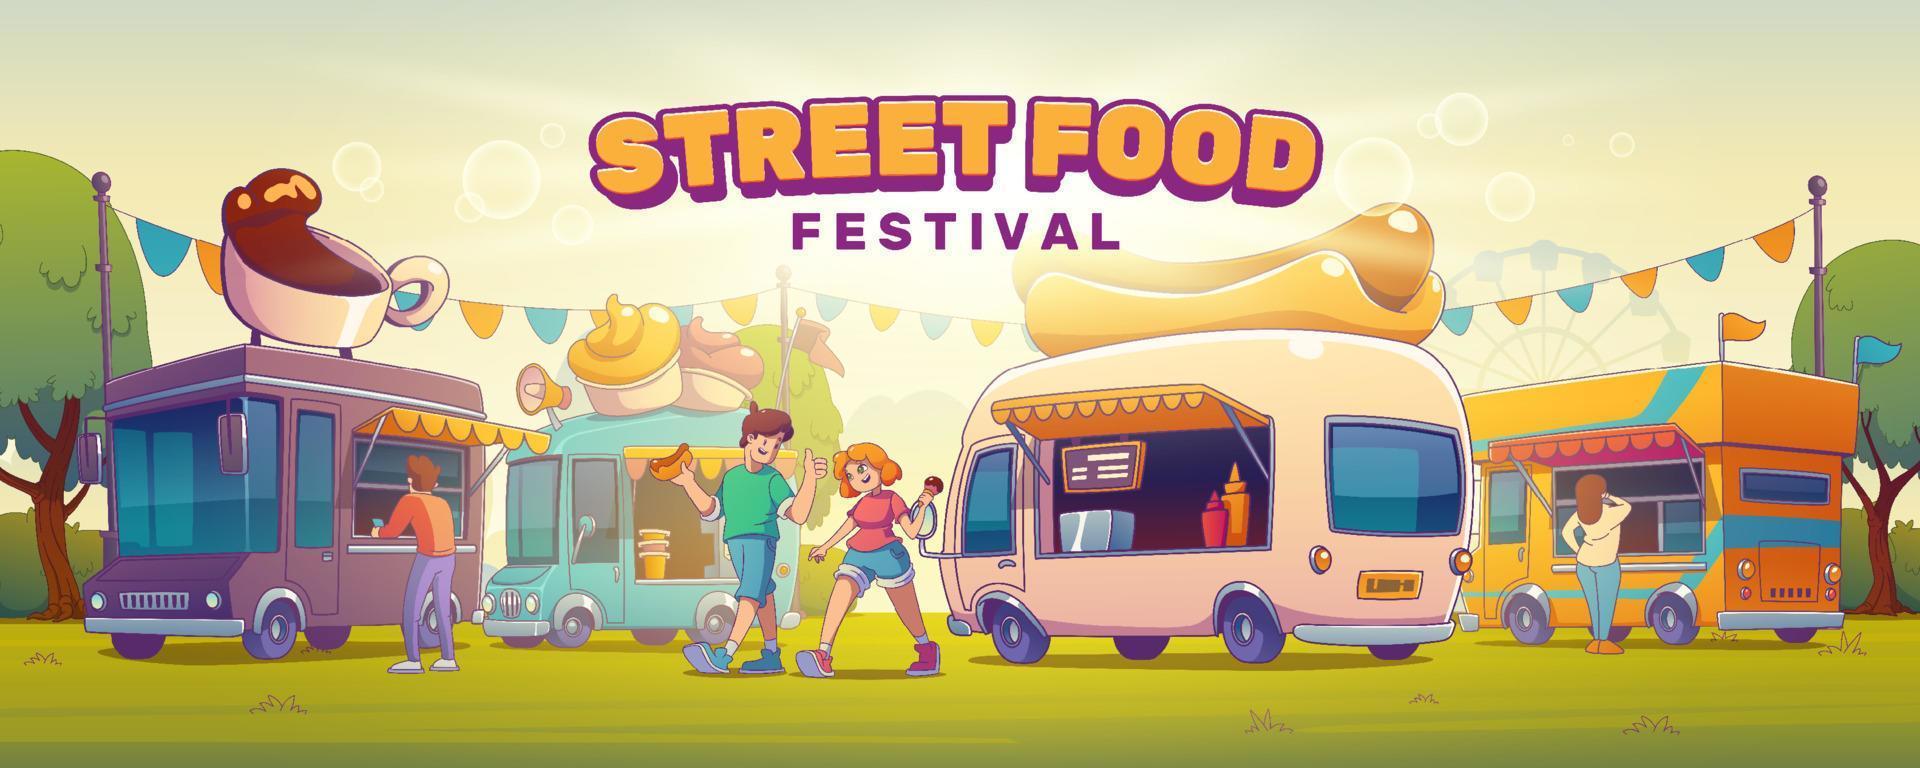 strada cibo Festival manifesto con persone su giusto vettore